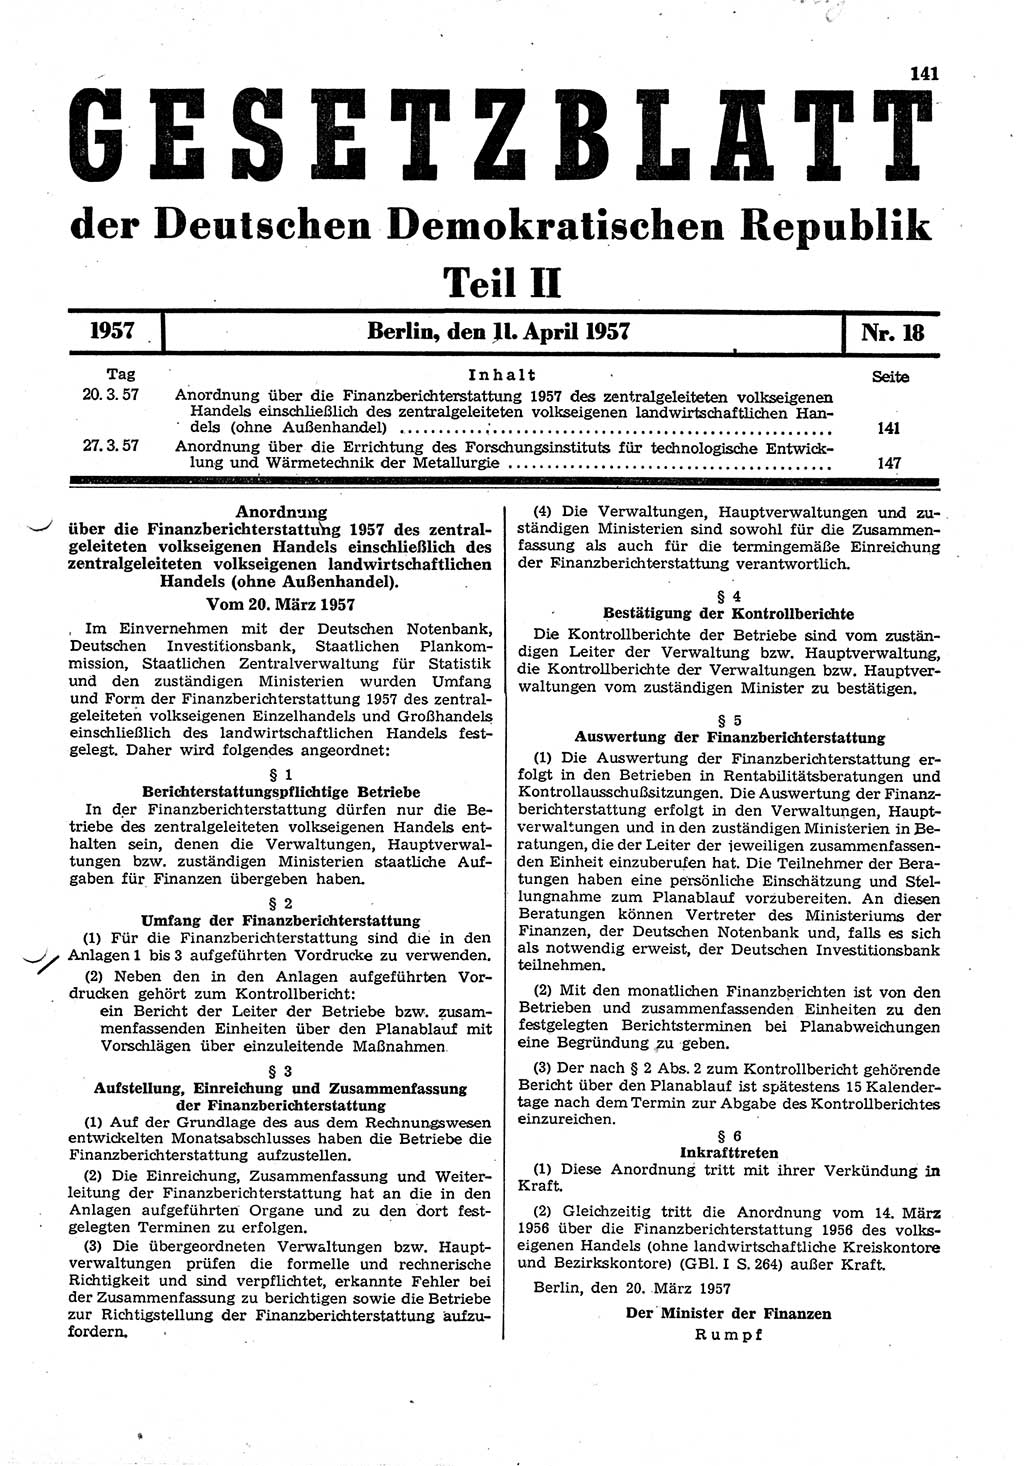 Gesetzblatt (GBl.) der Deutschen Demokratischen Republik (DDR) Teil ⅠⅠ 1957, Seite 141 (GBl. DDR ⅠⅠ 1957, S. 141)